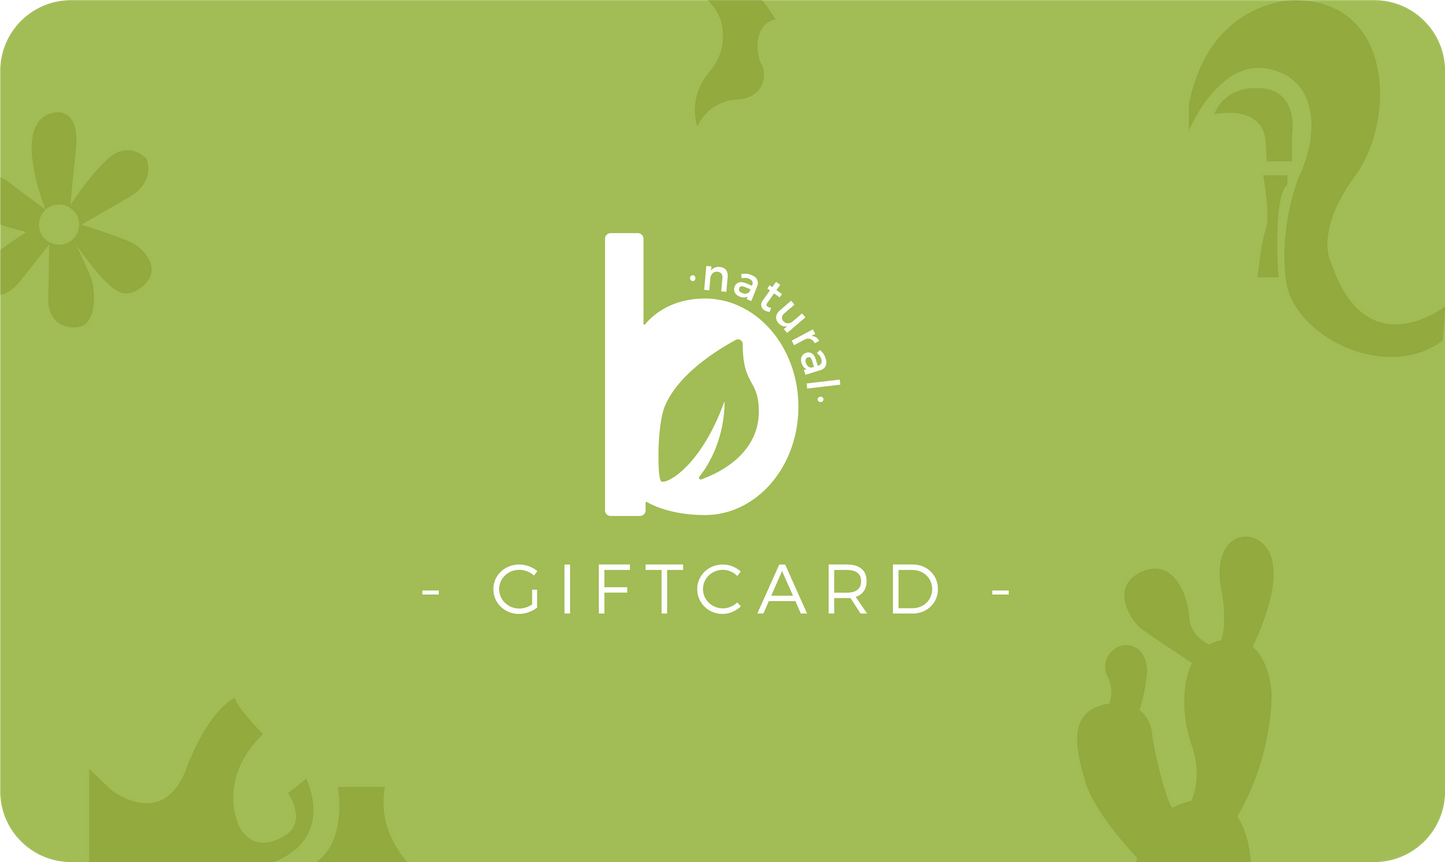 Bnatural- Tarjeta de regalo | GIFT CARD